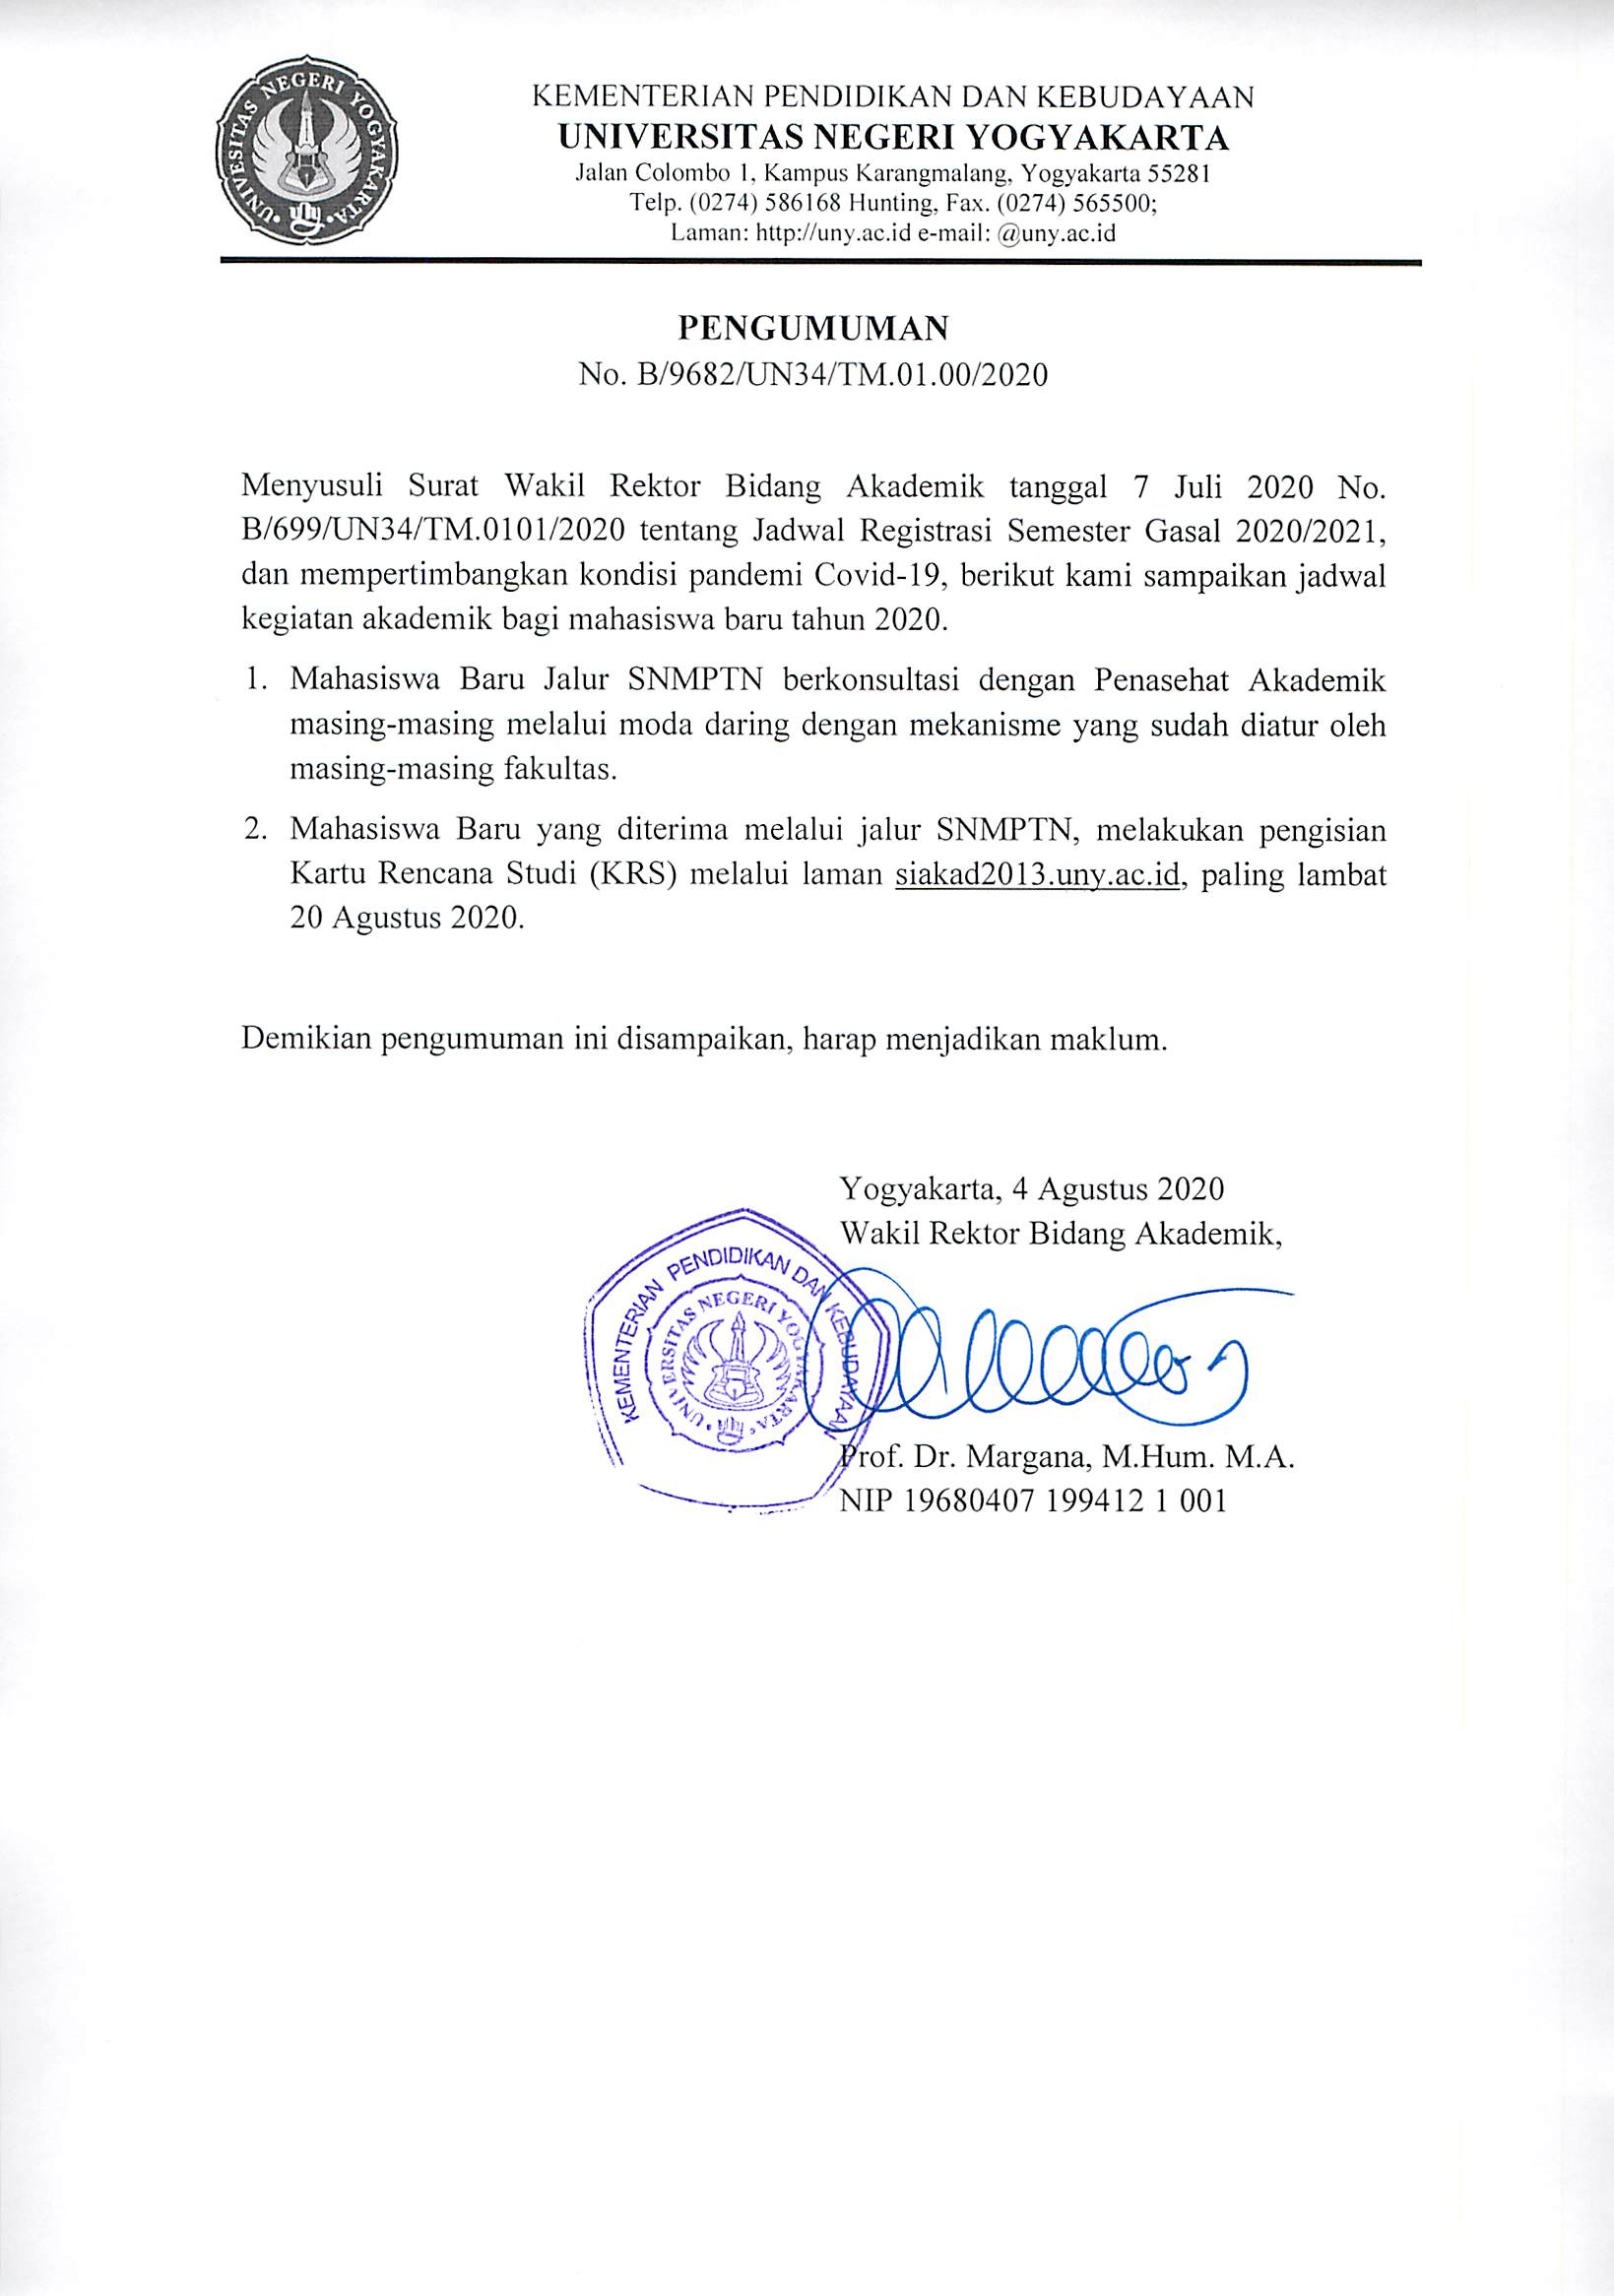 PENGISIAN KARTU RENCANA STUDI (KRS) MAHASISWA BARU JALUR SNMPTN 2020